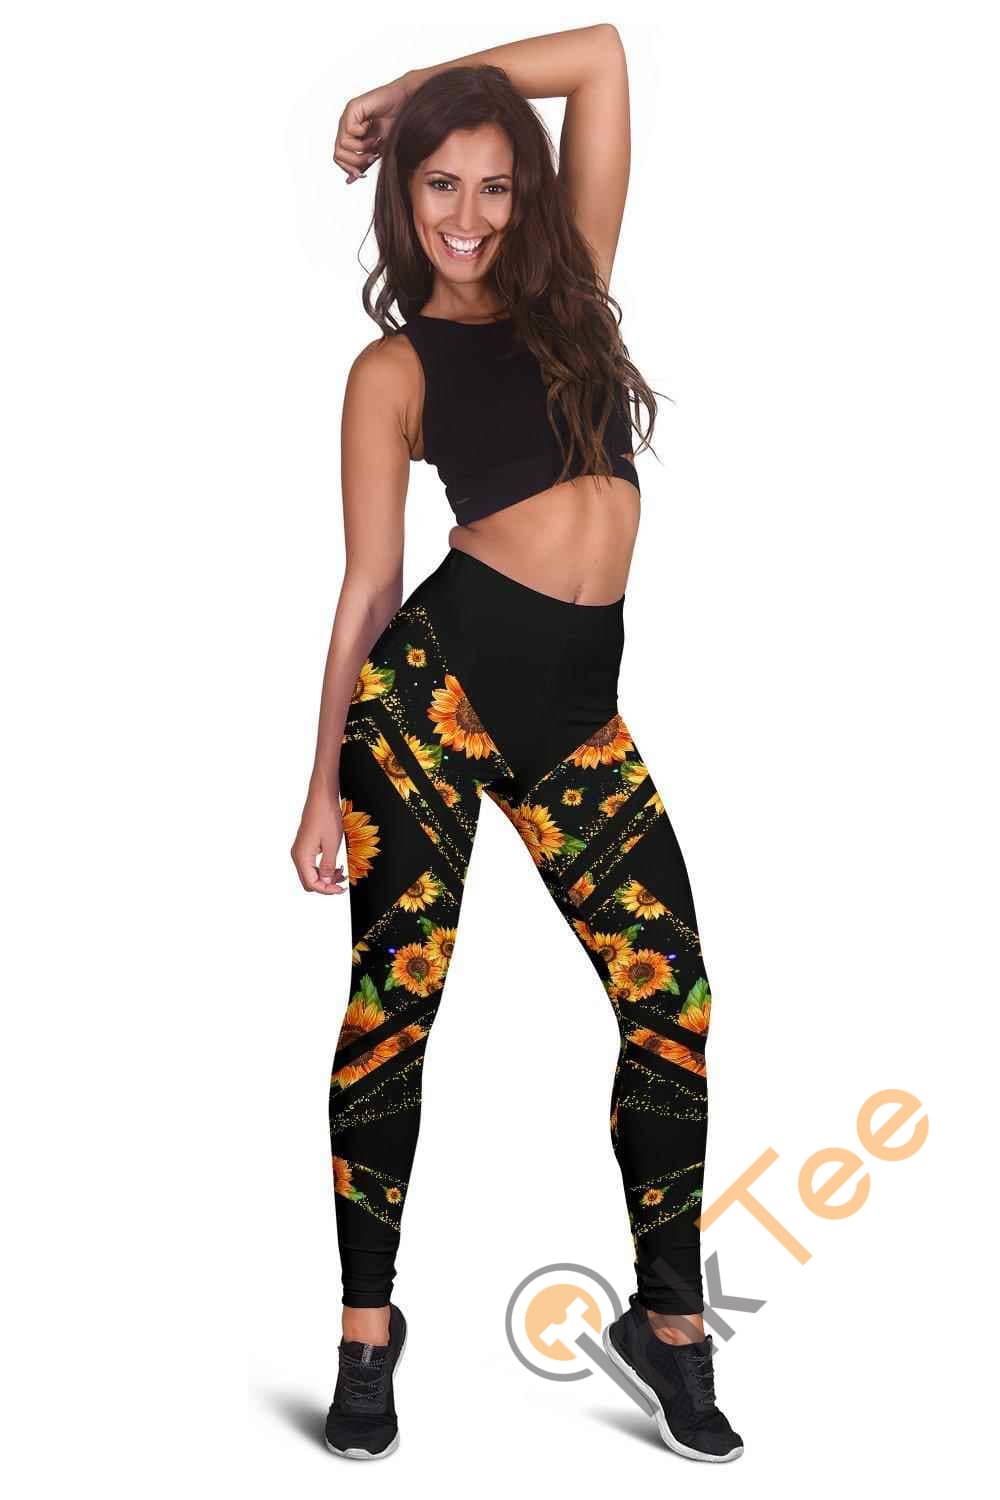 Inktee Store - Leggings 3D All Over Print For Yoga Fitness Women'S Leggings Image